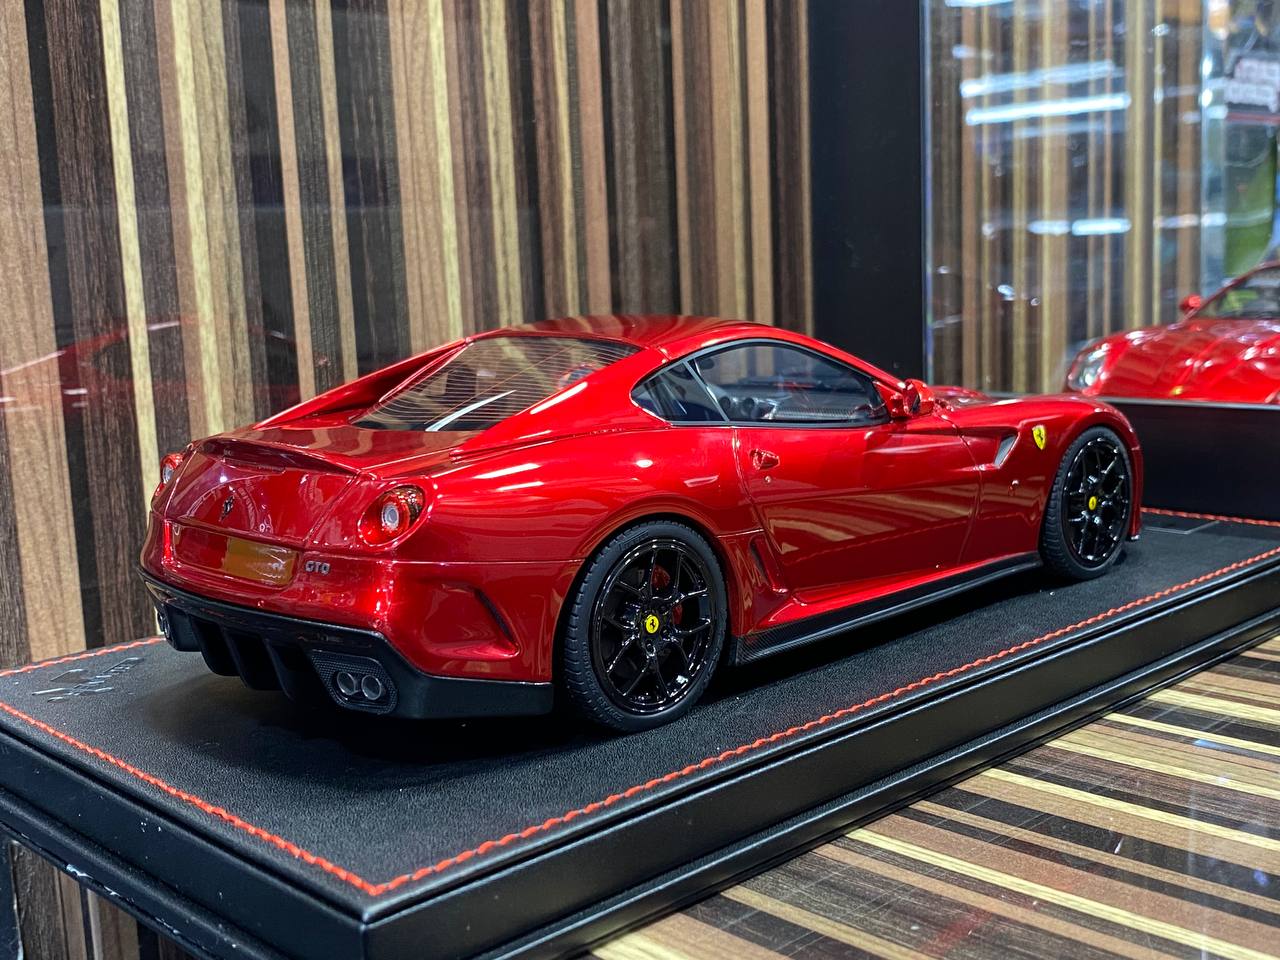 1/18 Ferrari Novitec 599 GTO Red Runner|Sold in Dturman.com Dubai UAE.